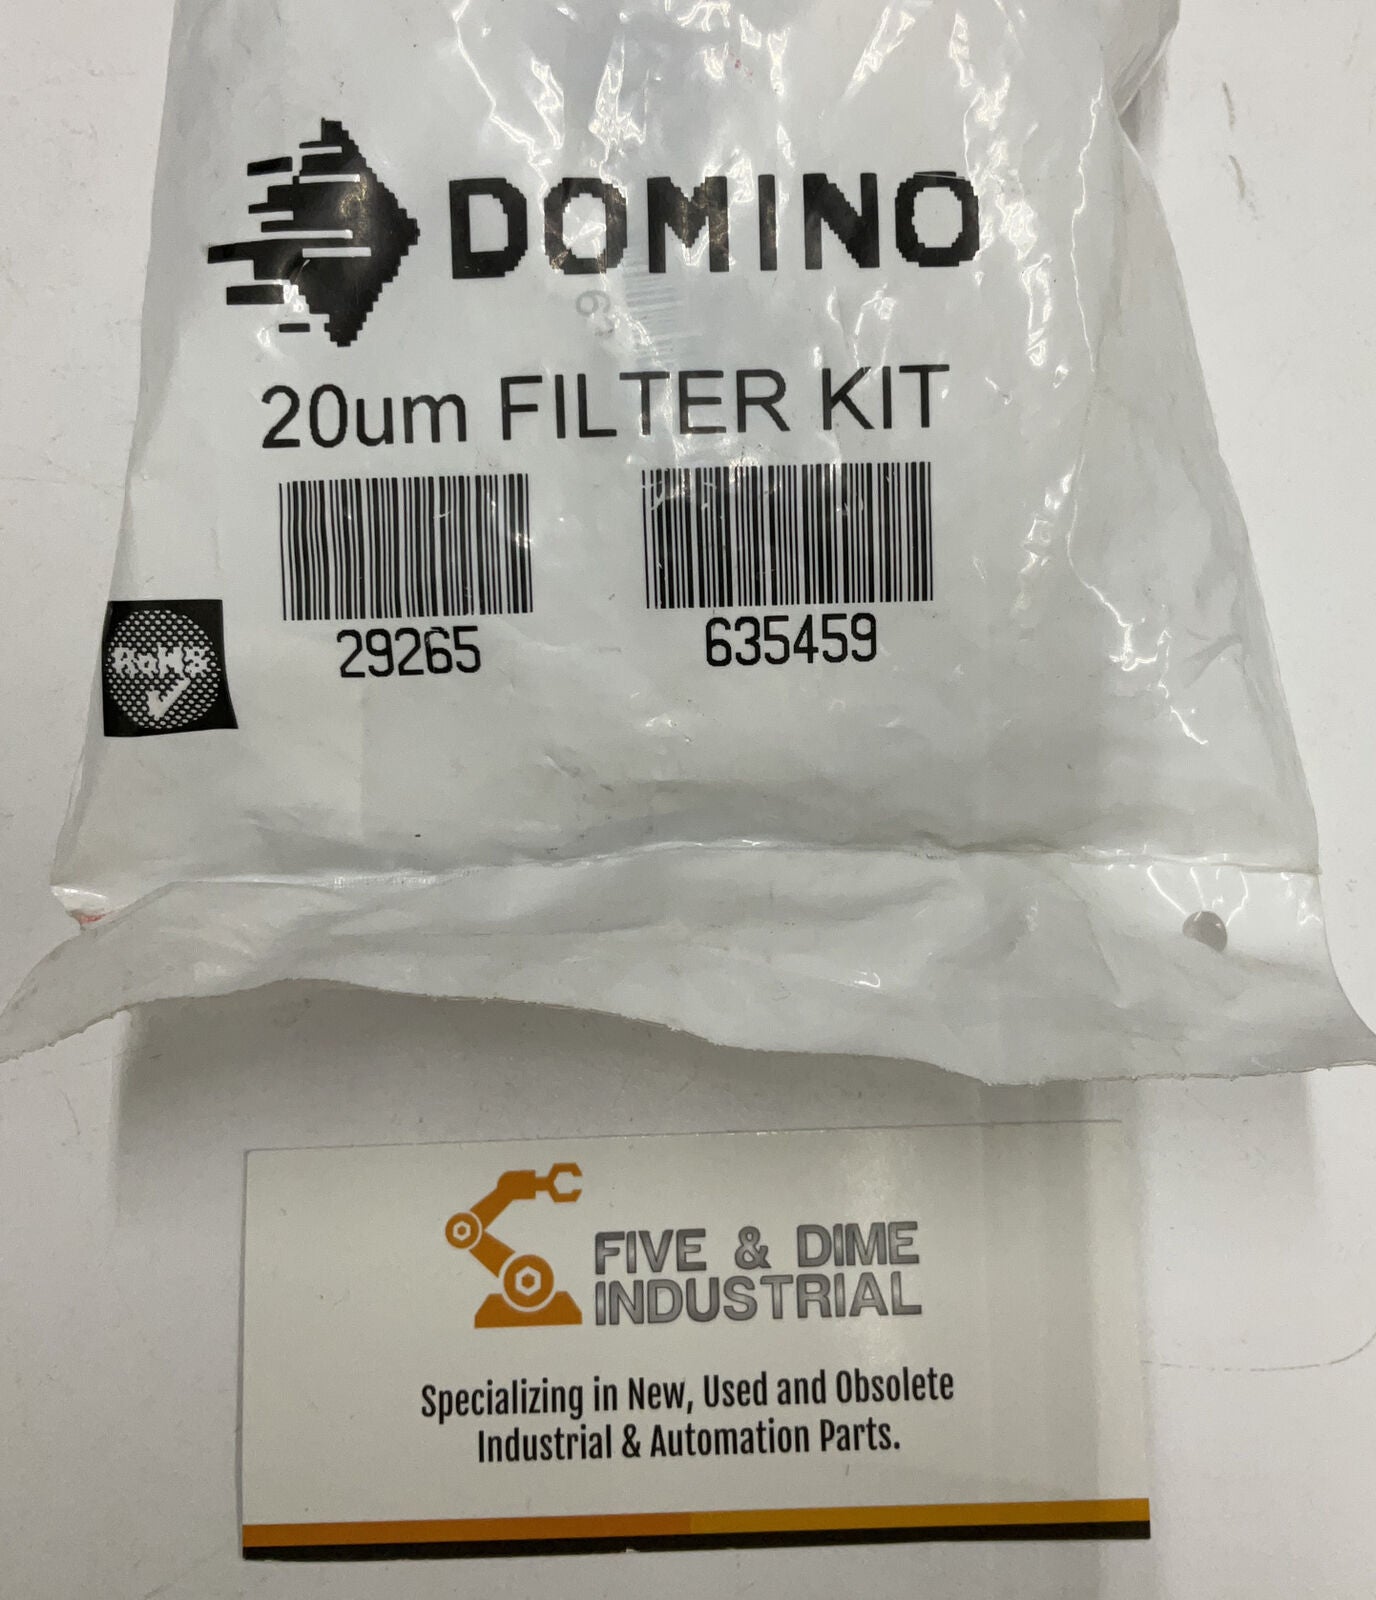 Domino 29265 20um Filter Kit (RE132) - 0